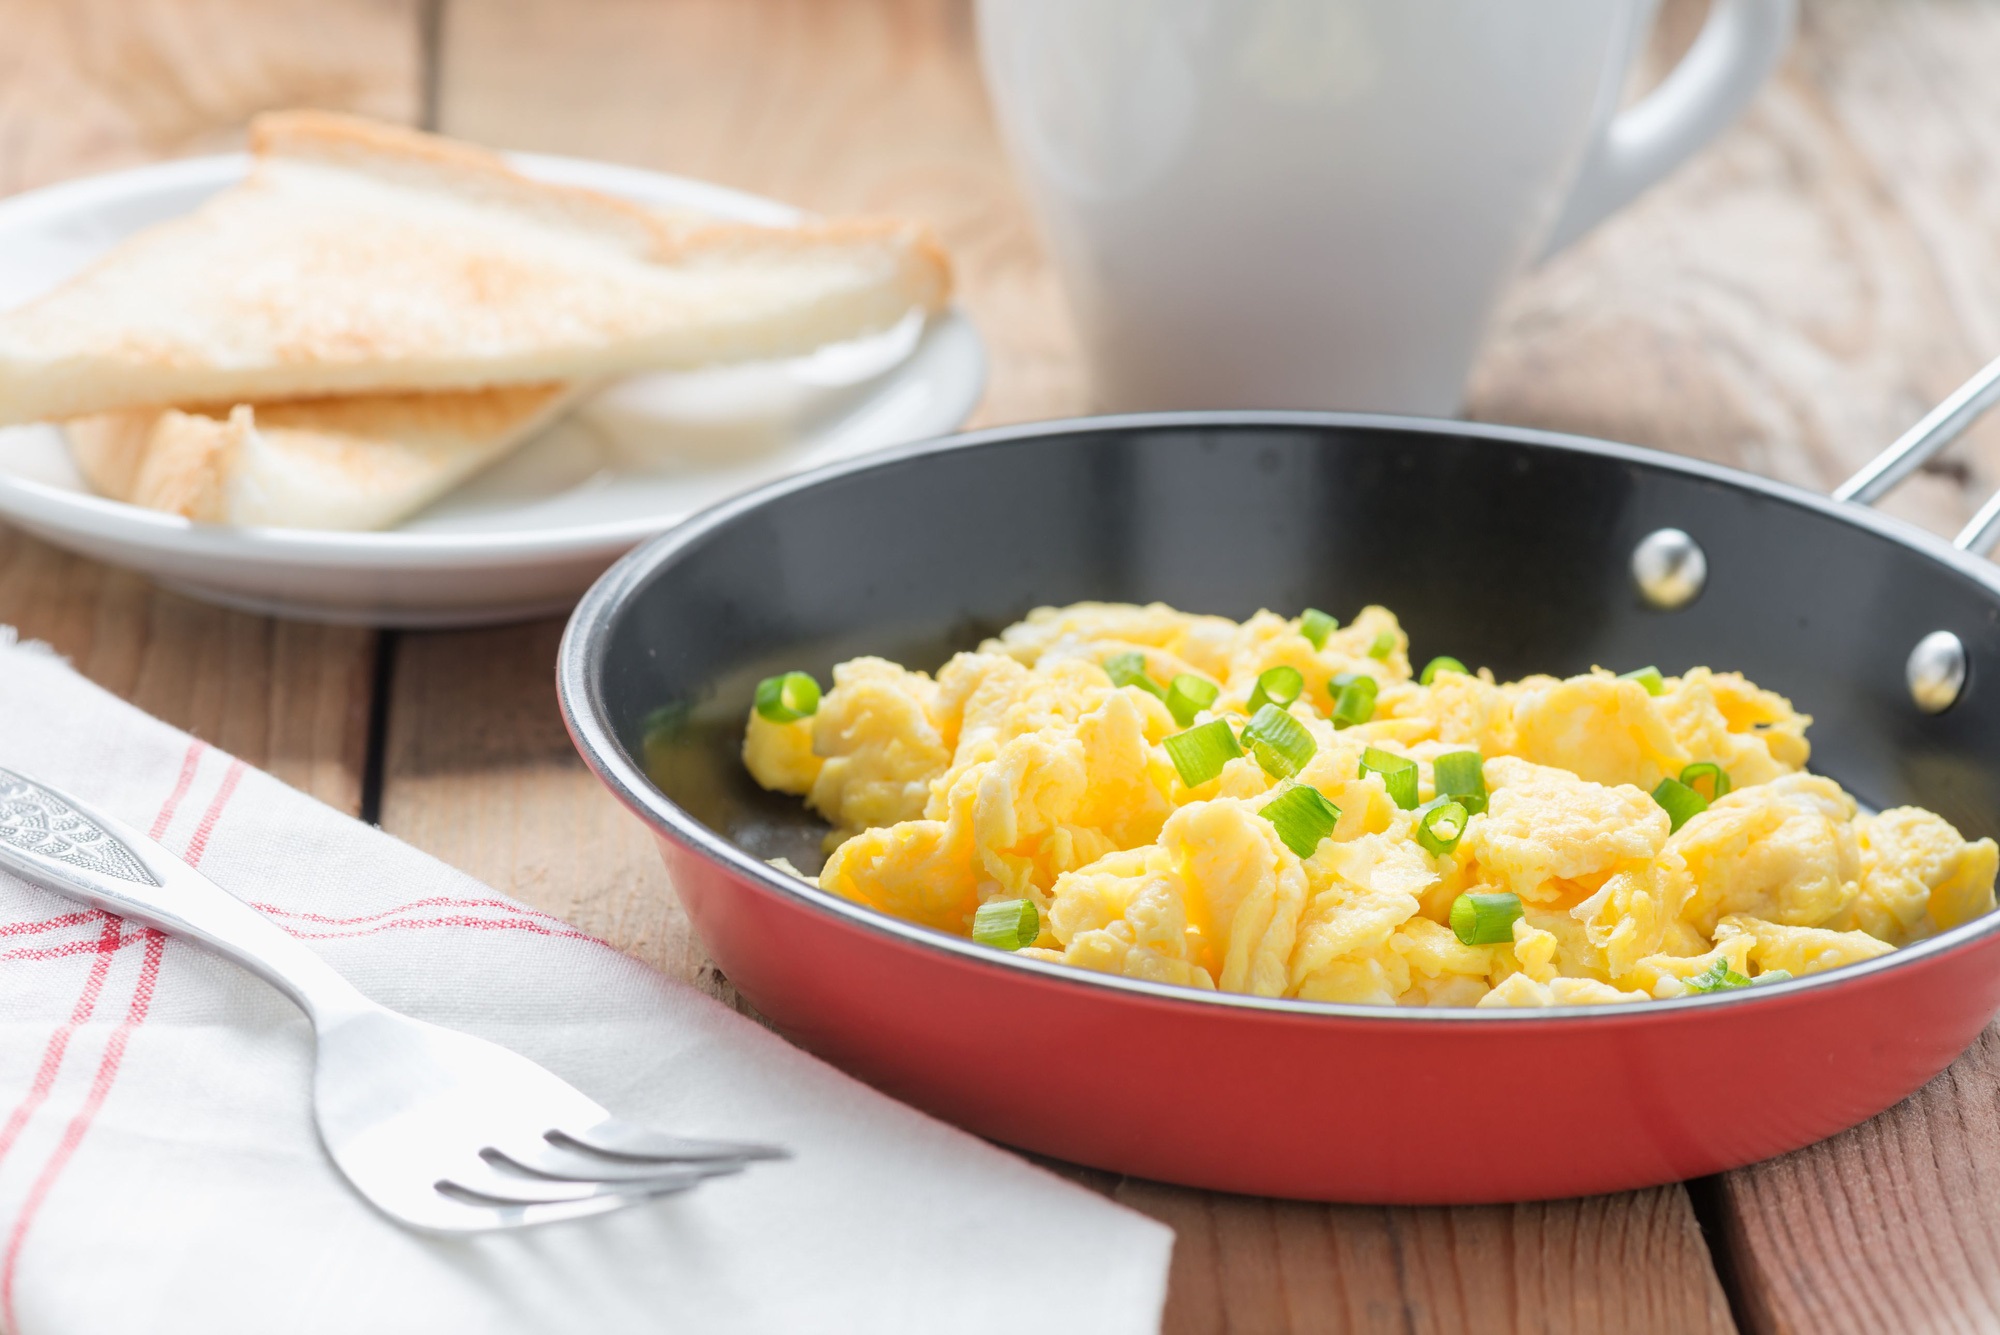 Ăn trứng vào buổi sáng rất bổ dưỡng nhưng tránh 3 điều kiêng kỵ này, nếu không sẽ tạo sỏi dạ dày, tích tụ độc tố trong cơ thể - Ảnh 4